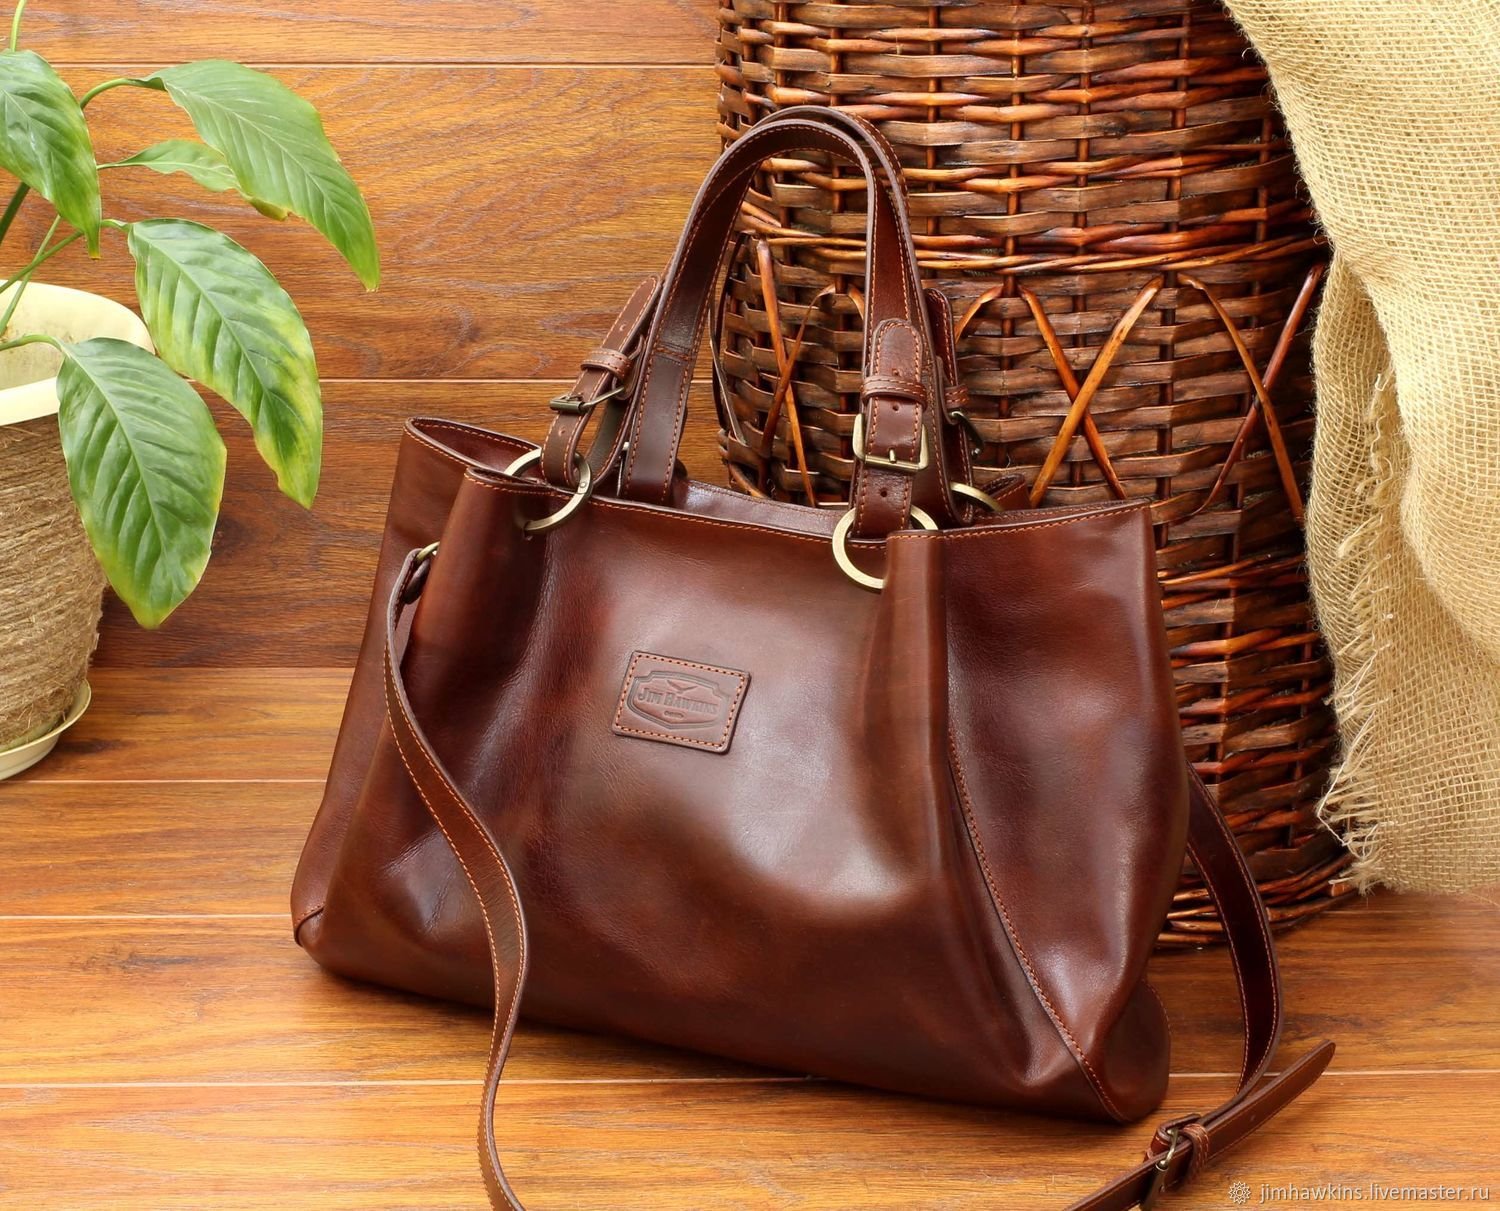 Хорошие кожаные купить в. Саквояж esse Джил (65413), натуральная кожа. Стильные кожаные сумки женские. Женская кожаная сумка. Модные кожаные сумки.